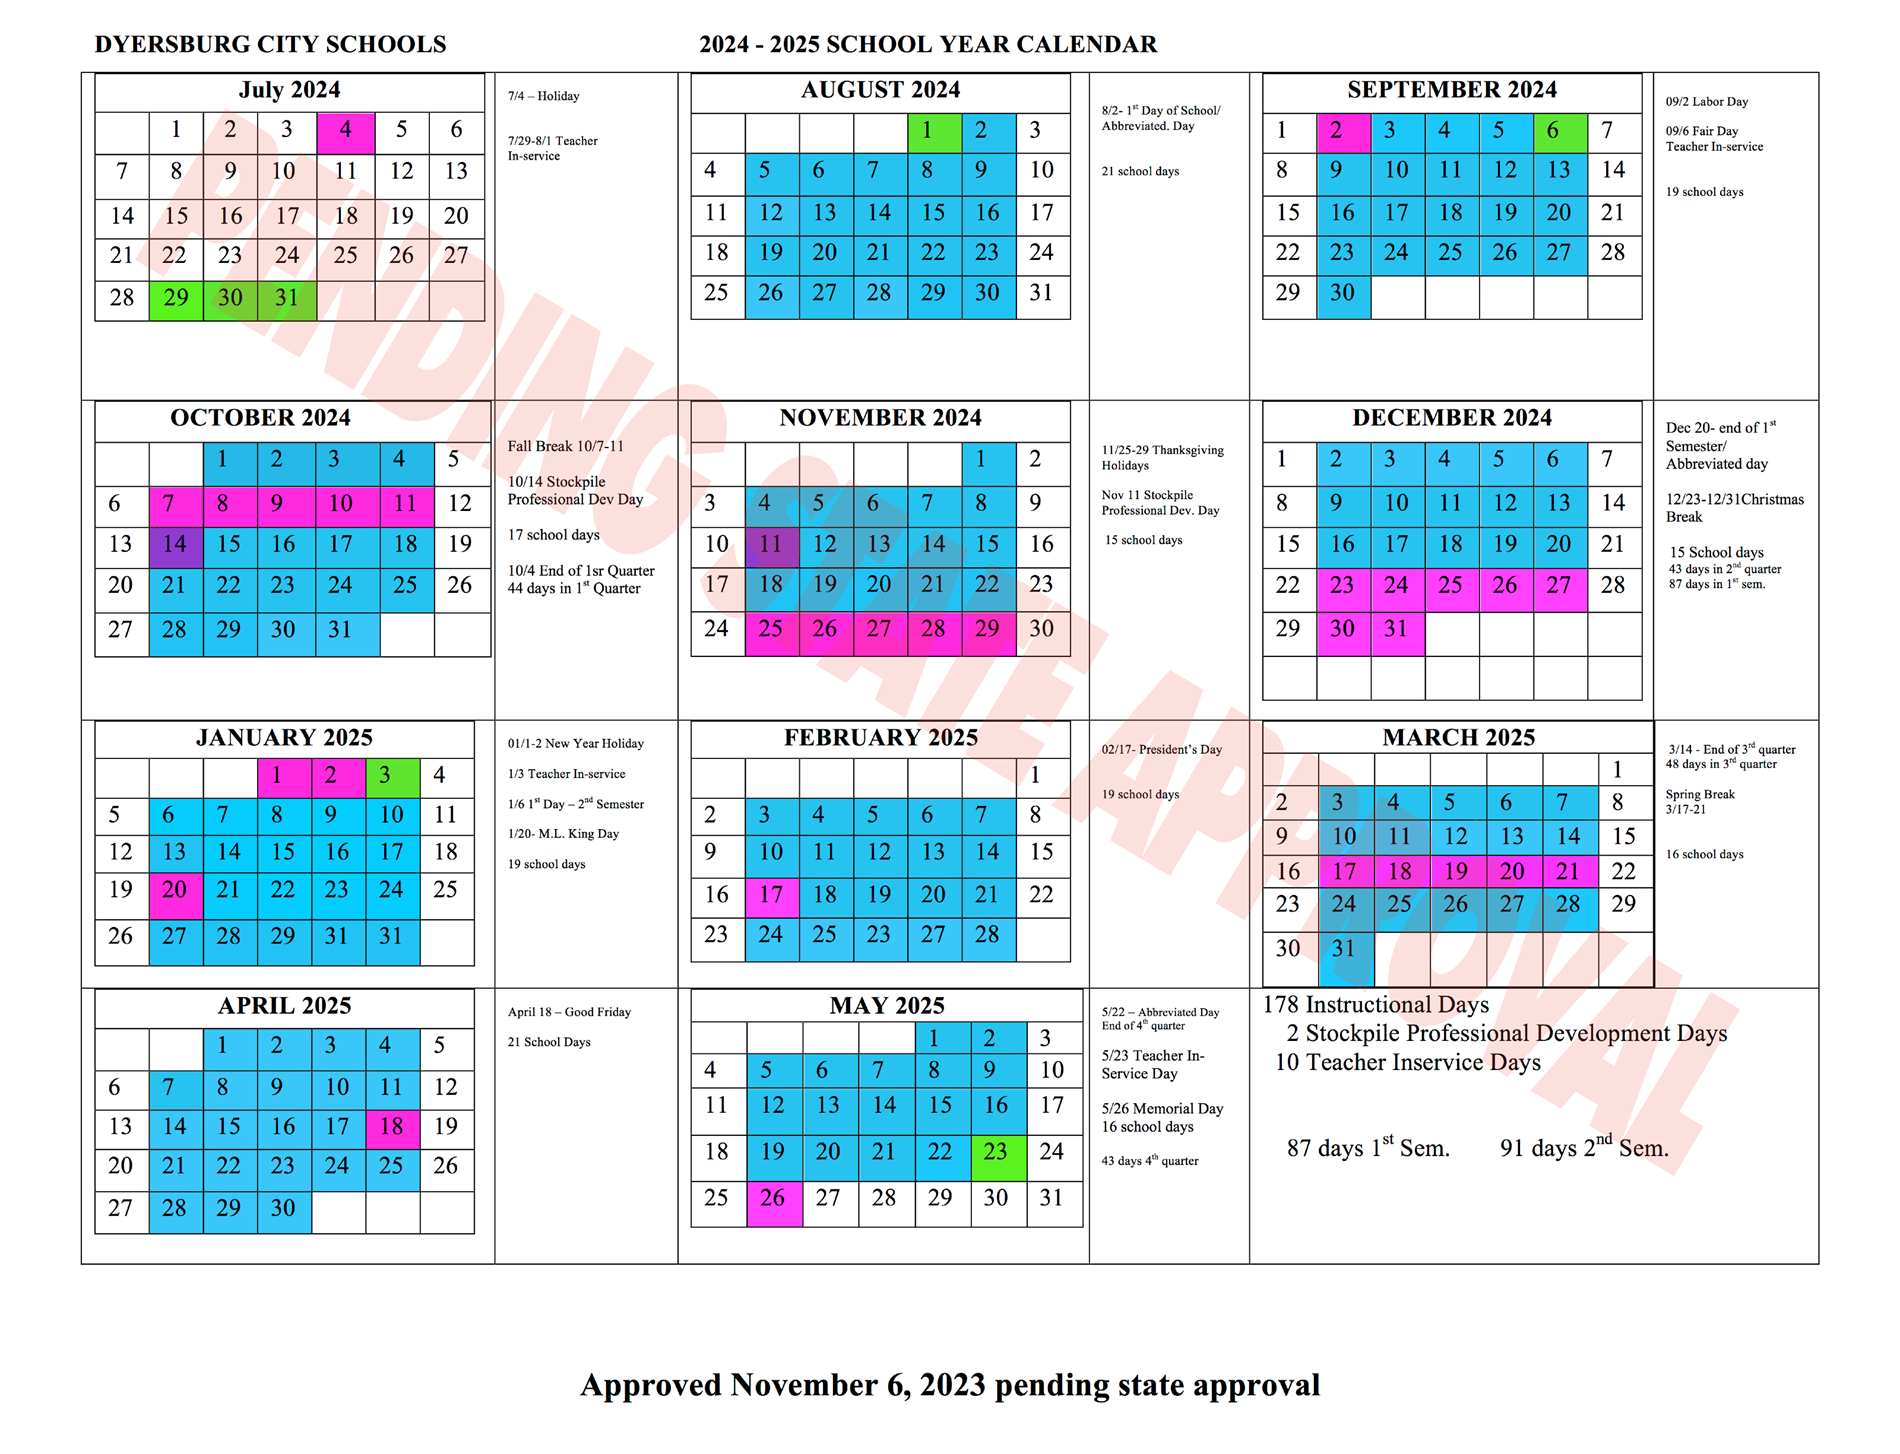 24-25 calendar pending approval